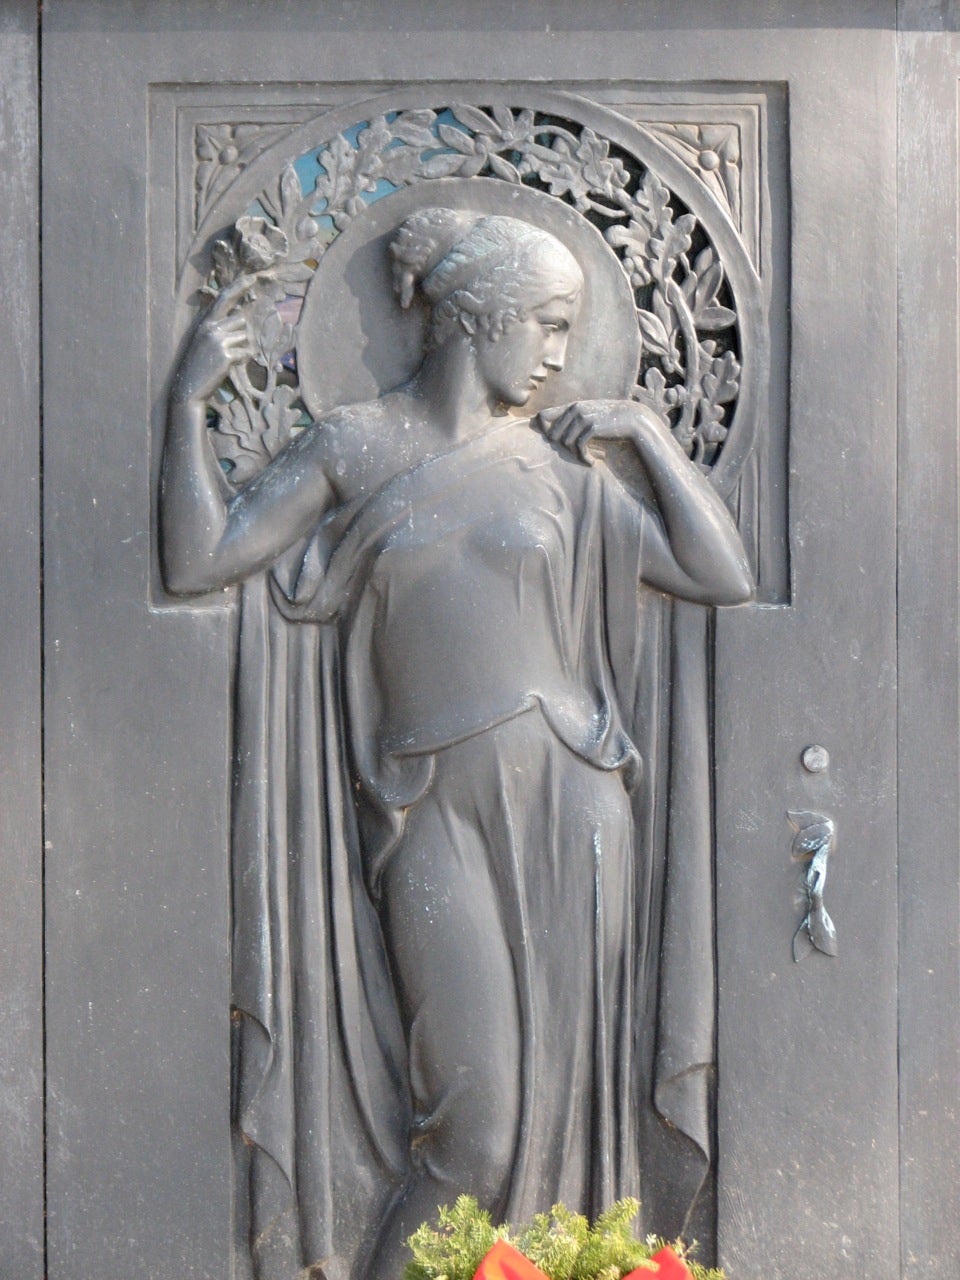 An Art Nouveau figure adorns the entrance of a mausoleum